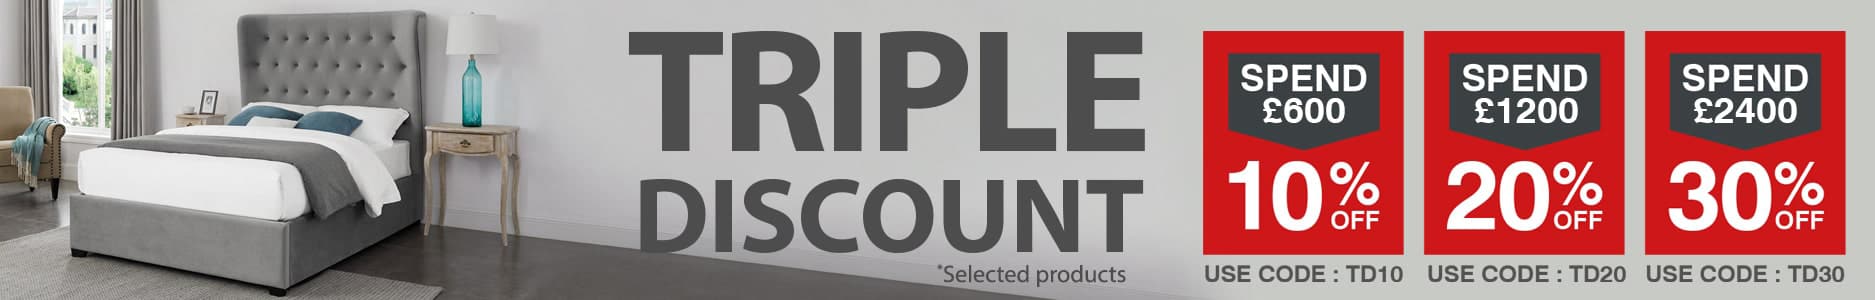 new-triple-discount-1548x246d-min